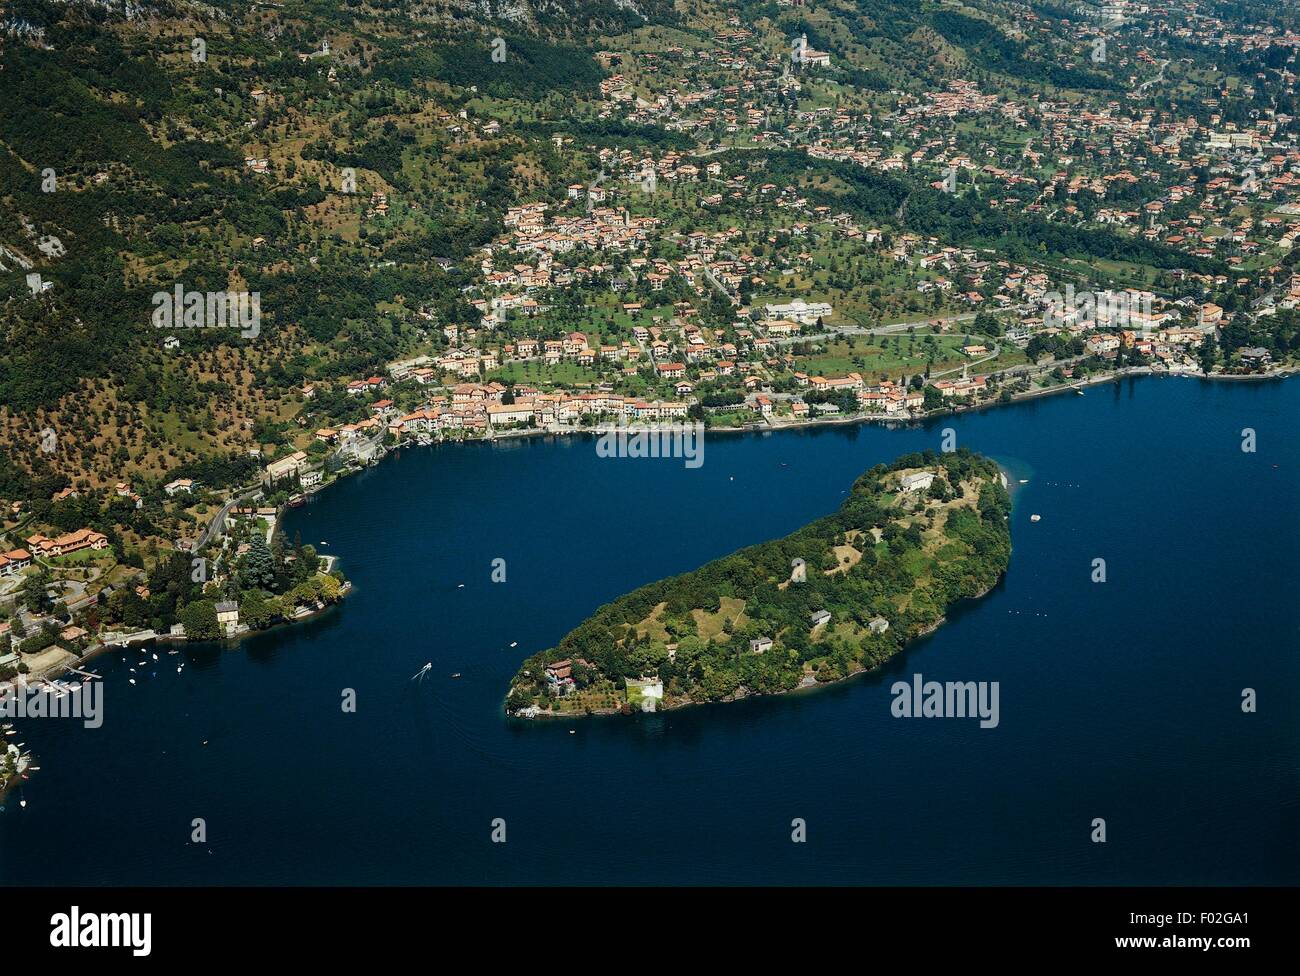 Vista aerea del Lago di Como o Lario con Isola Comacina - Regione Lombardia, Italia Foto Stock